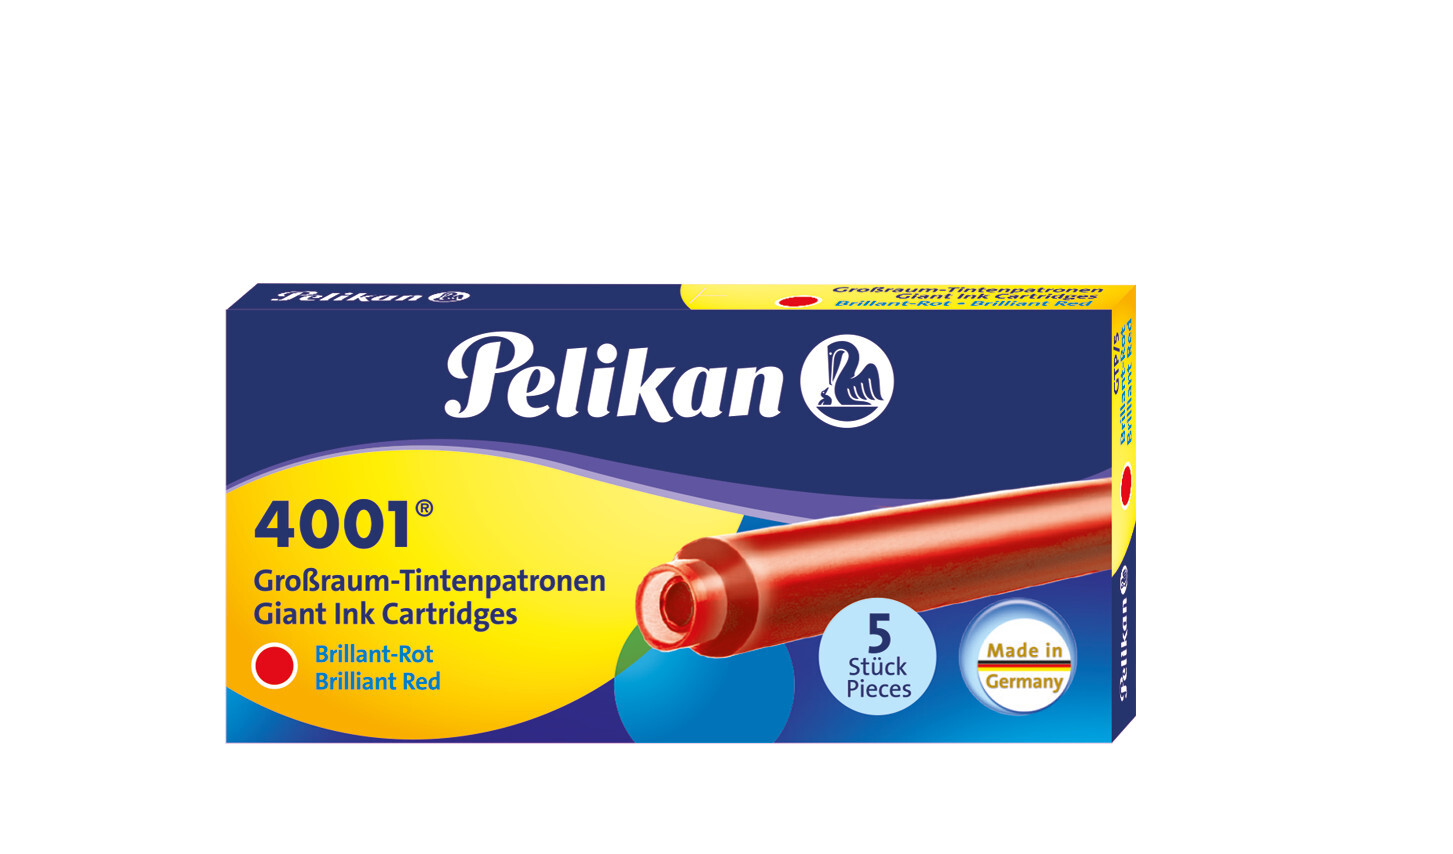 Pelikan Füllerpatronen 4001® Großraum 5er Set Brillant-Rot